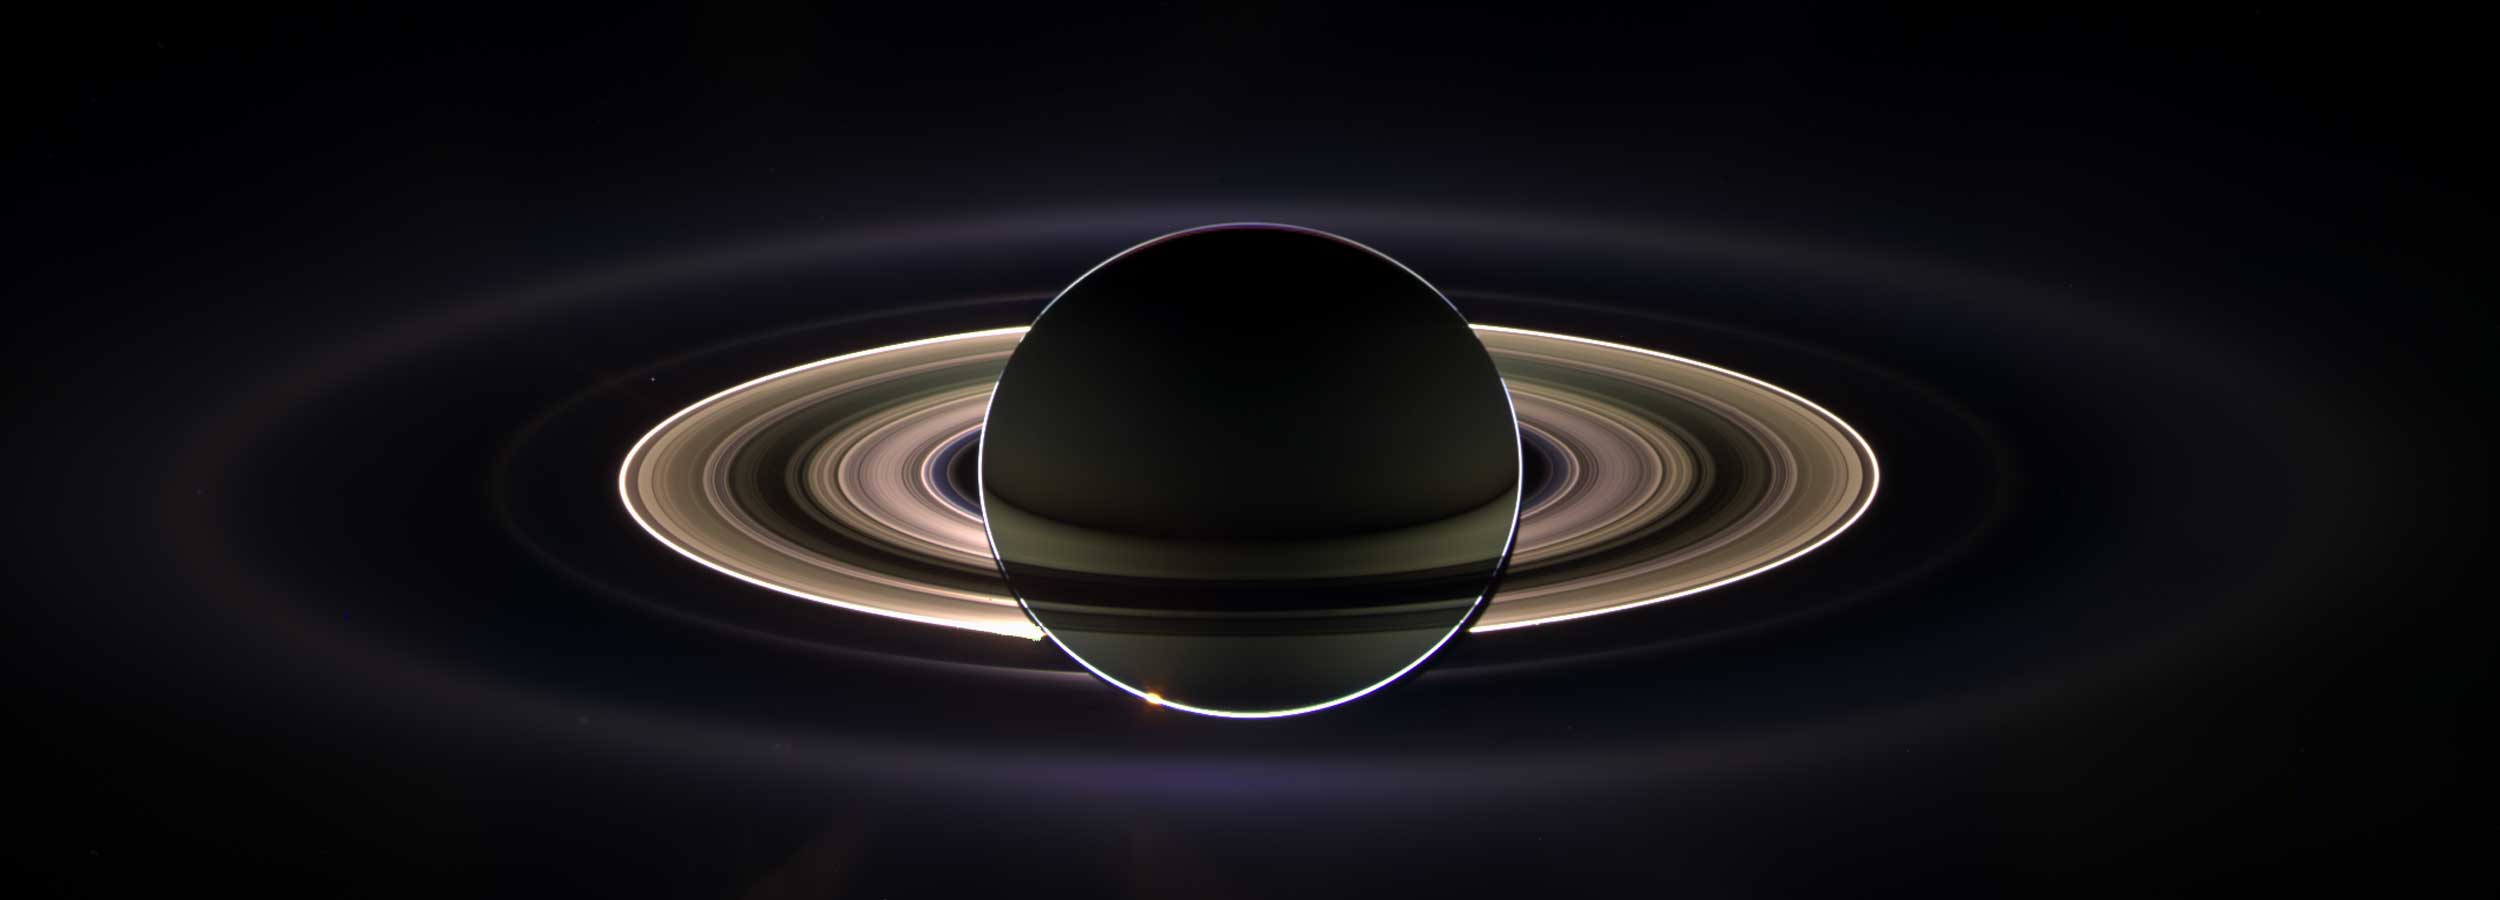 “Saturn